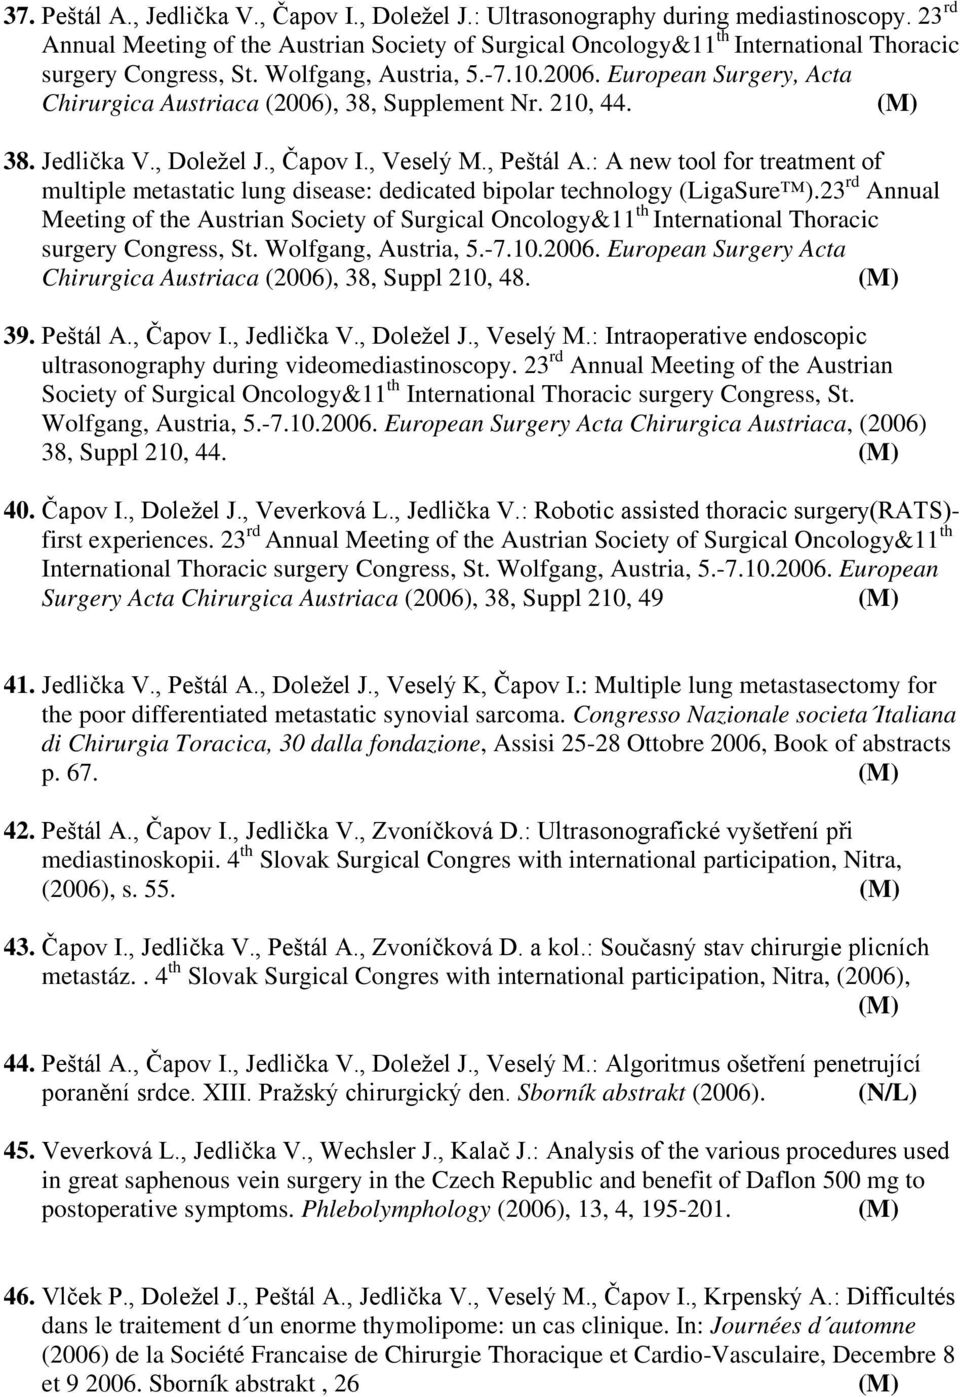 European Surgery, Acta Chirurgica Austriaca (2006), 38, Supplement Nr. 210, 44. 38. Jedlička V., Doležel J., Čapov I., Veselý M., Peštál A.